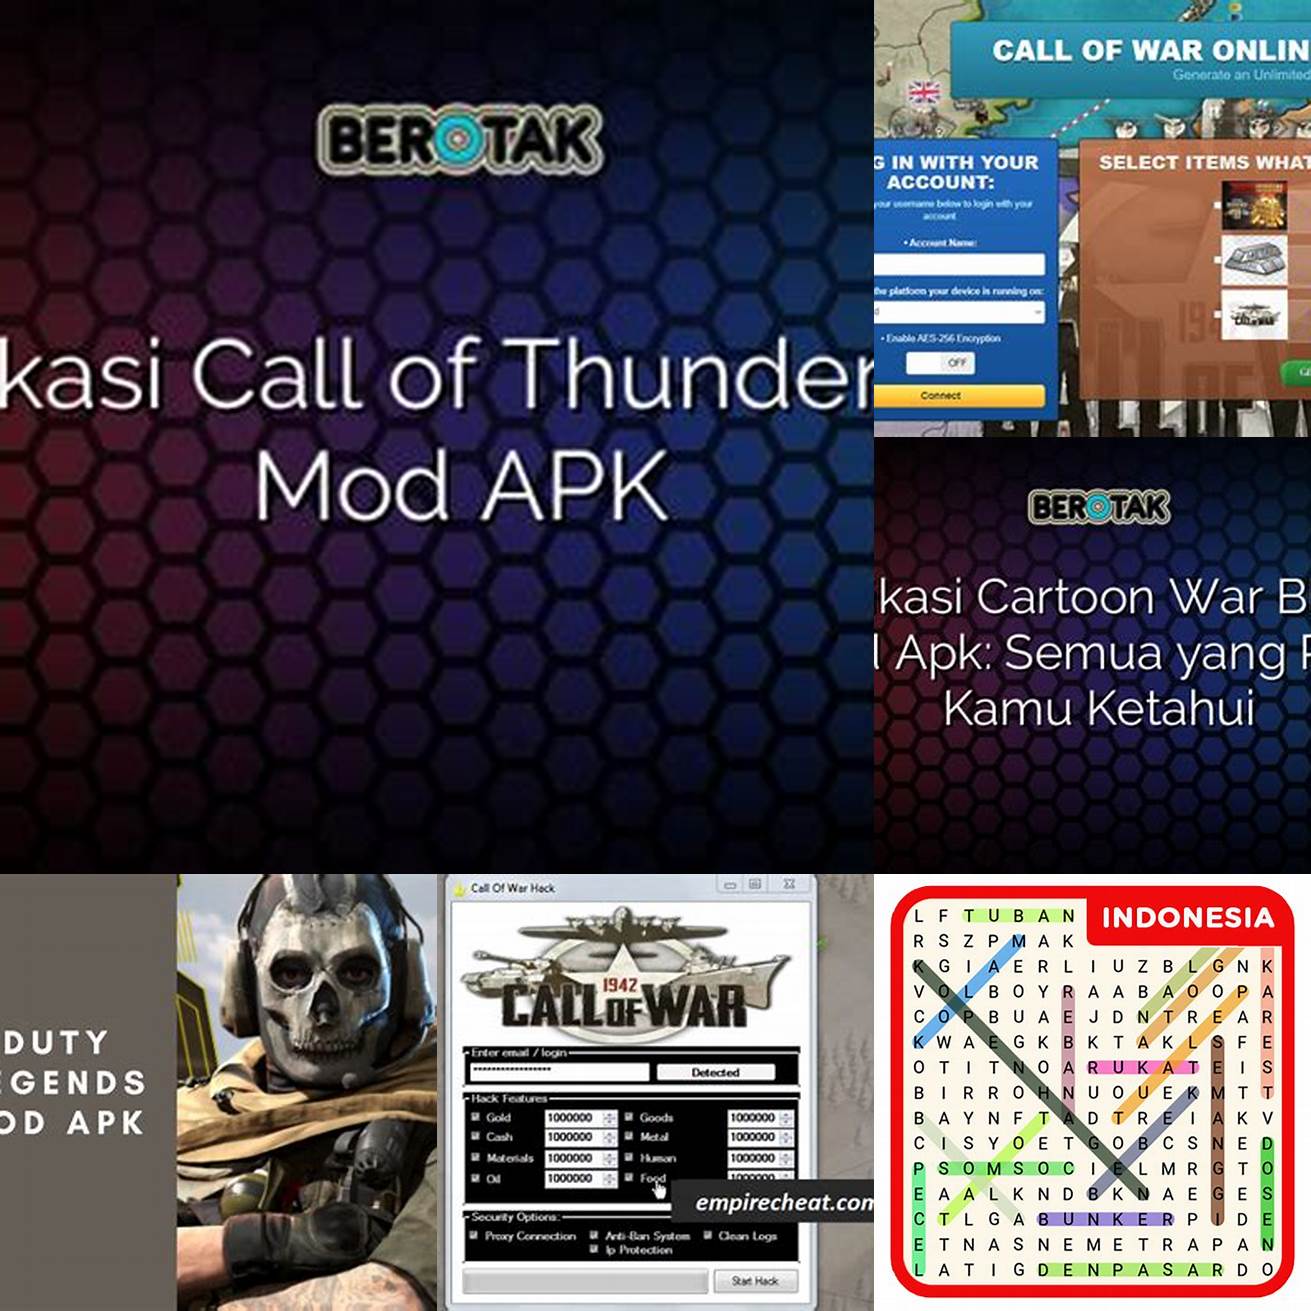 Buka browser kamu dan cari Call of War Mod Apk